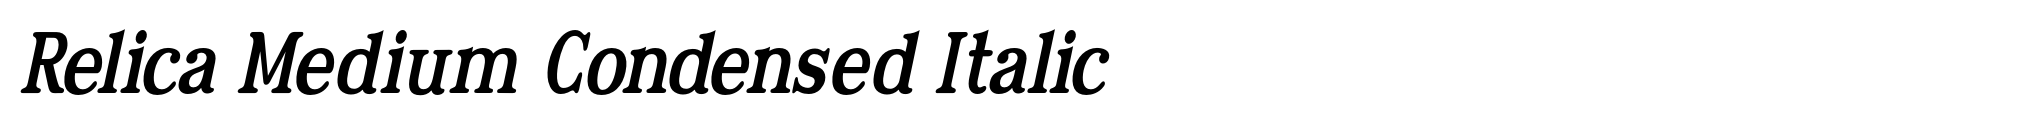 Relica Medium Condensed Italic image